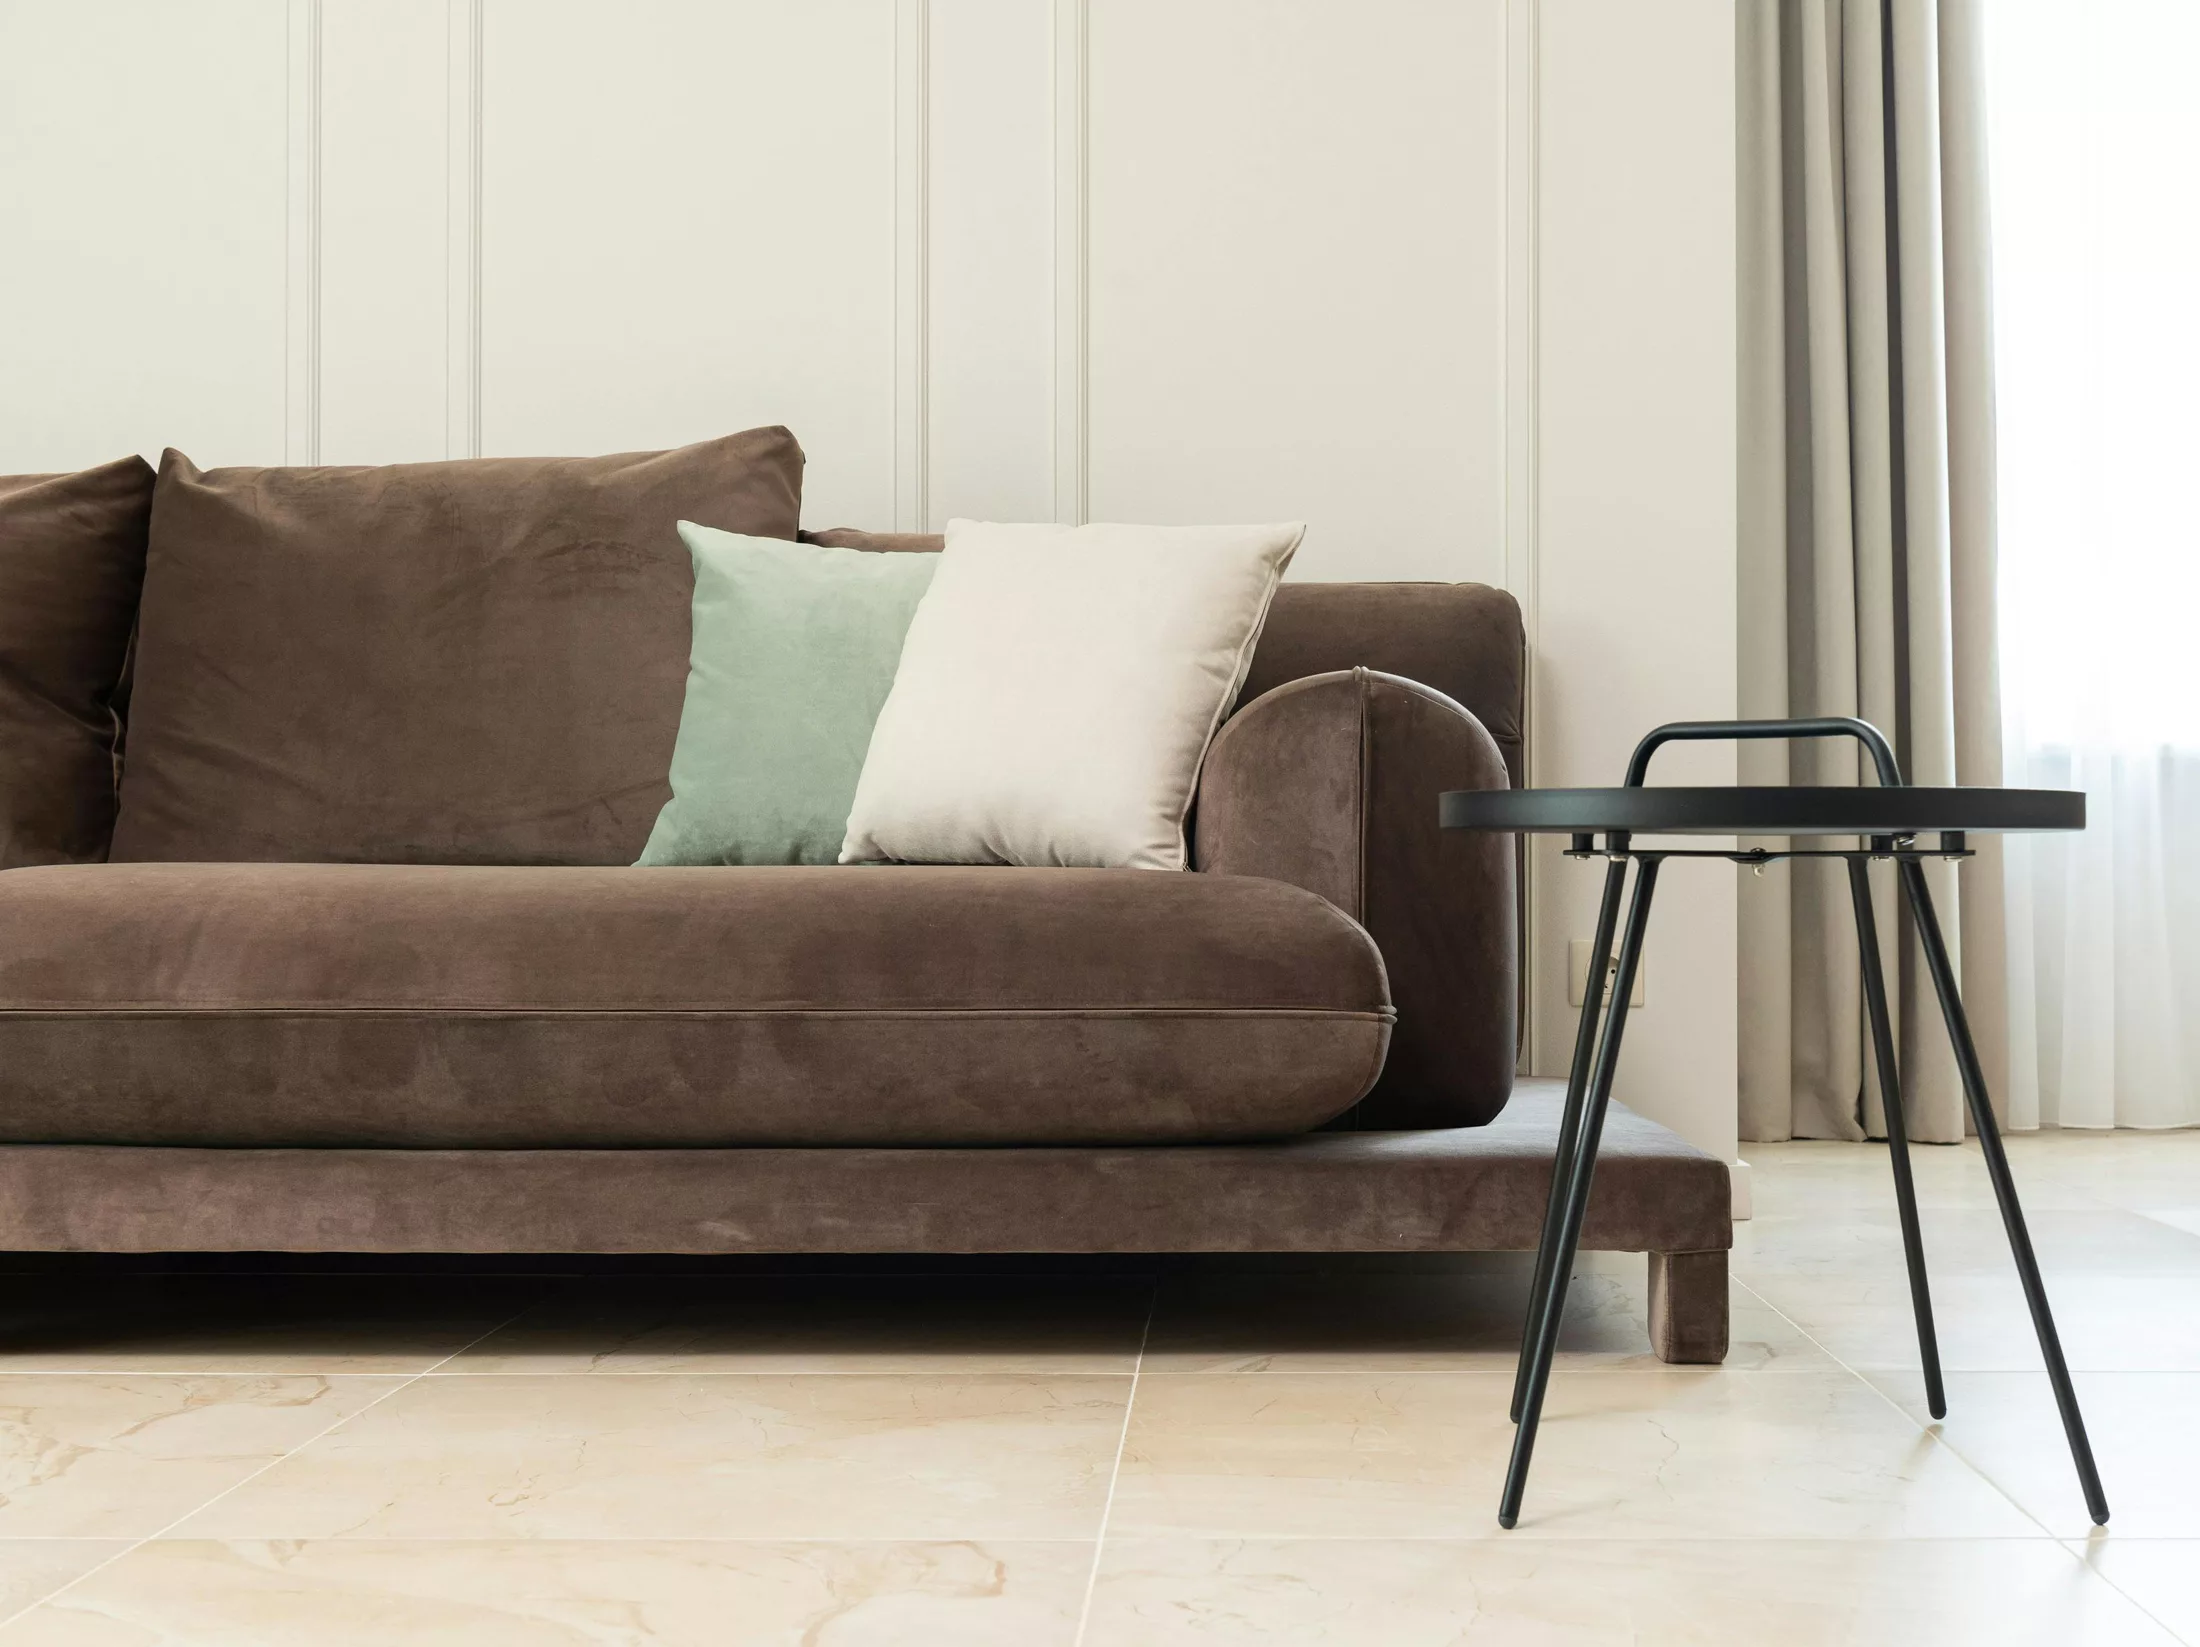 Les 5 avantages de la location d’un appartement meublé : confort et flexibilité